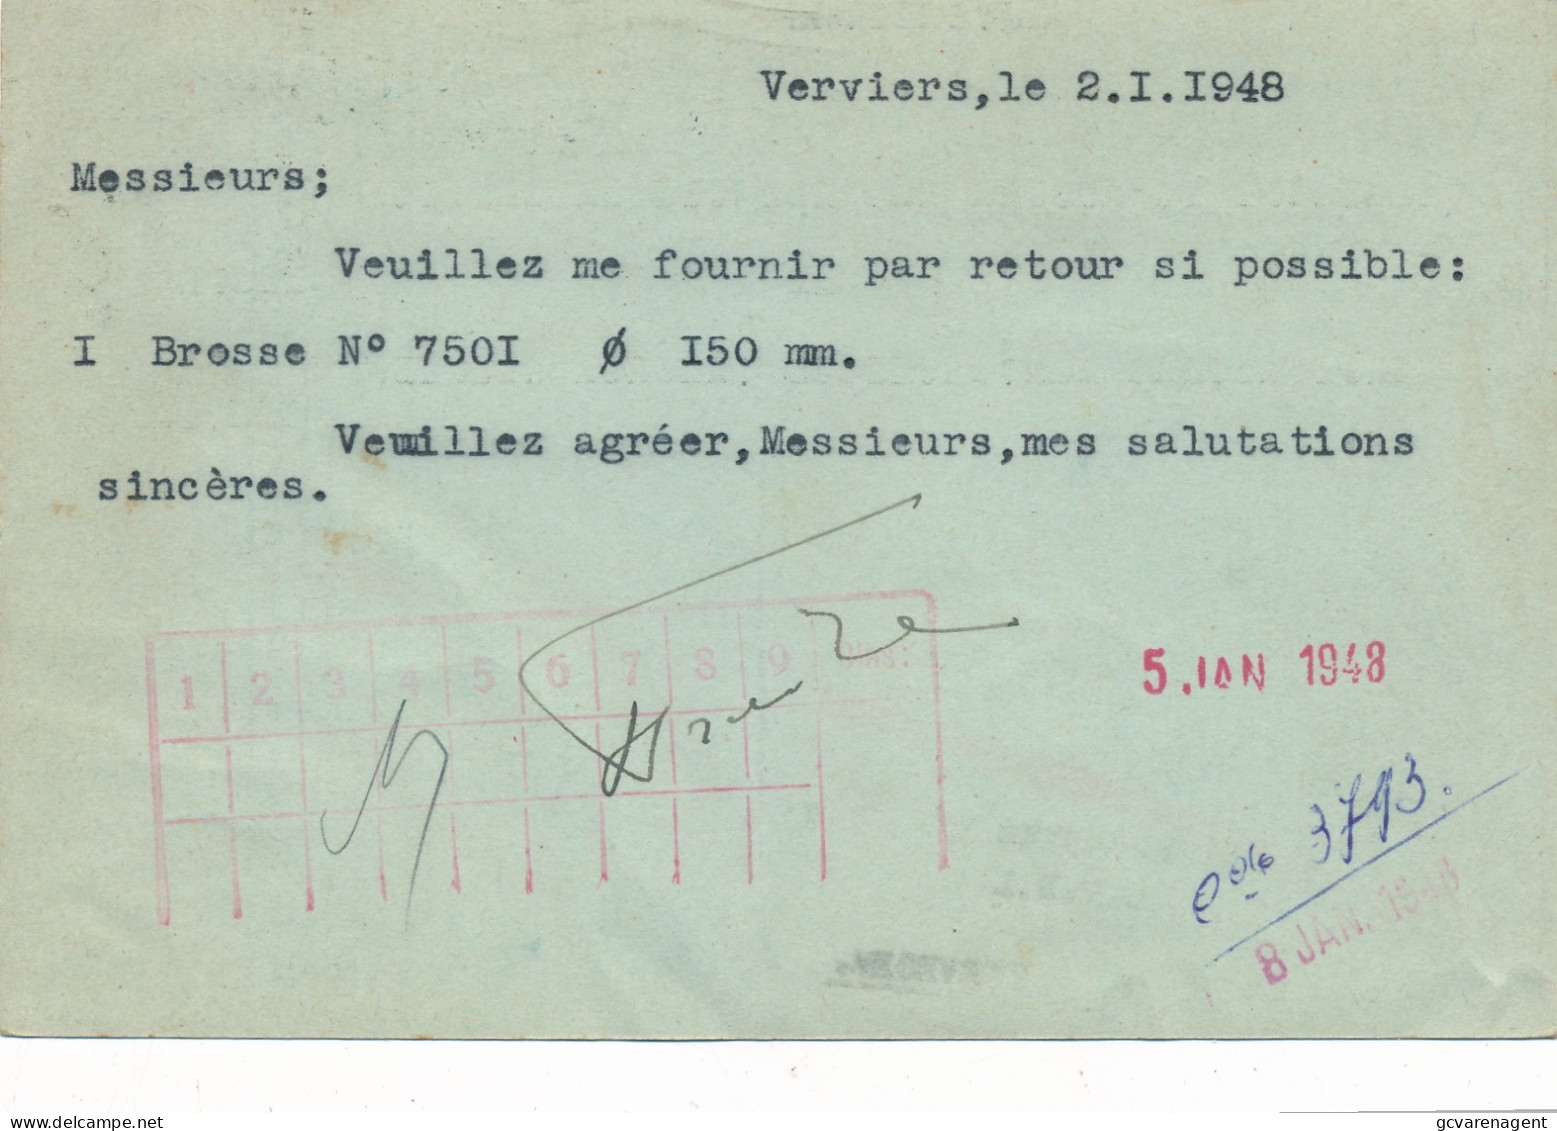 VERVIERS 1948 CARTE DE COMMERCE - QUINCAILLERIE GENARE - A LA TETE DE BOEUF - L.FRAITURE     2 SCANS - Verviers